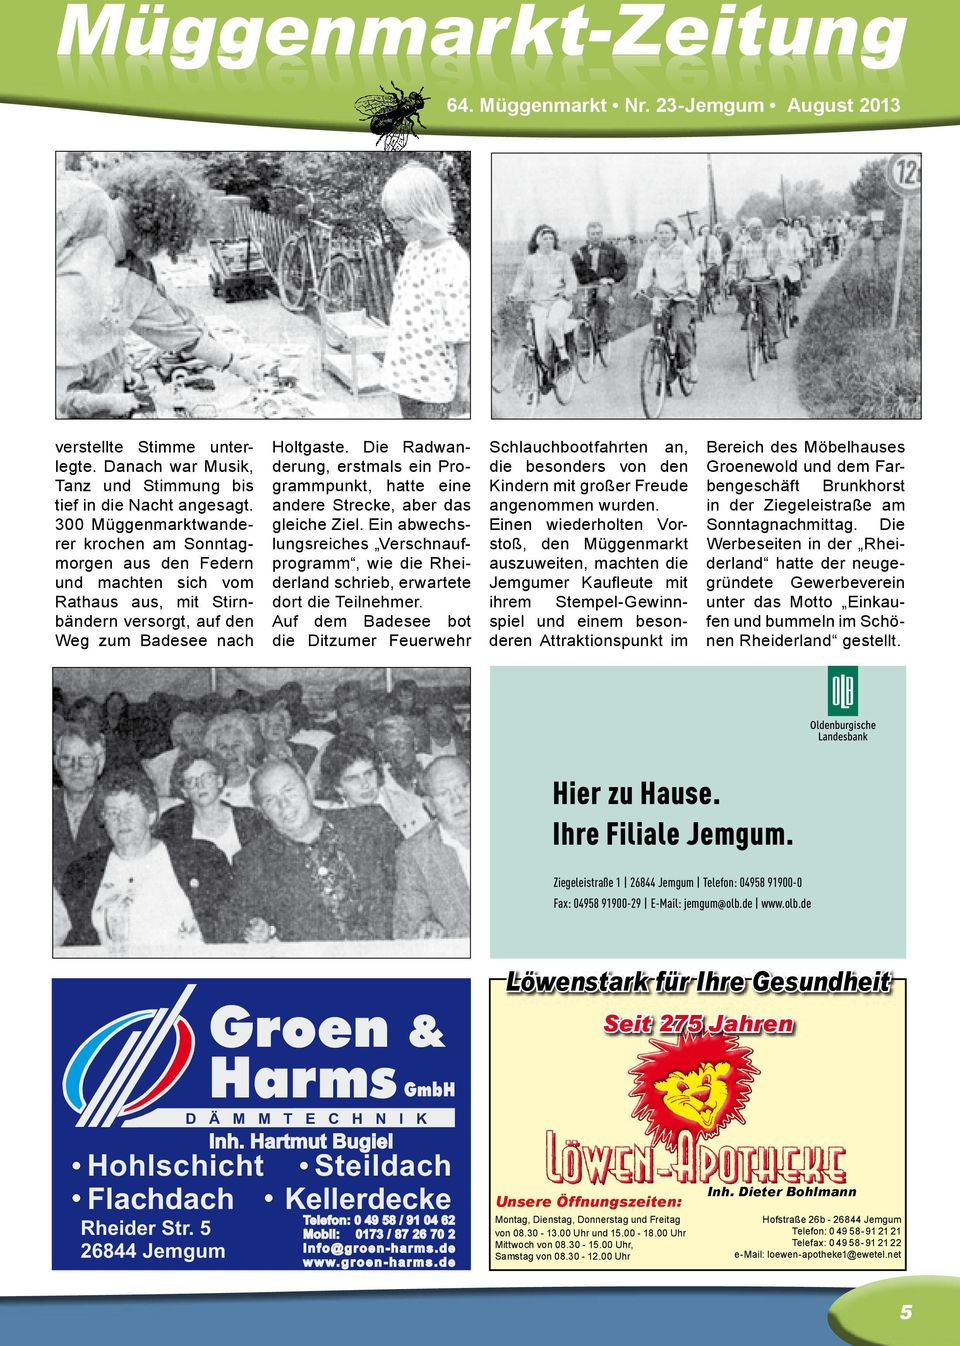 Die Radwanderung, erstmals ein Programmpunkt, hatte eine andere Strecke, aber das gleiche Ziel. Ein abwechslungsreiches Verschnaufprogramm, wie die Rheiderland schrieb, erwartete dort die Teilnehmer.